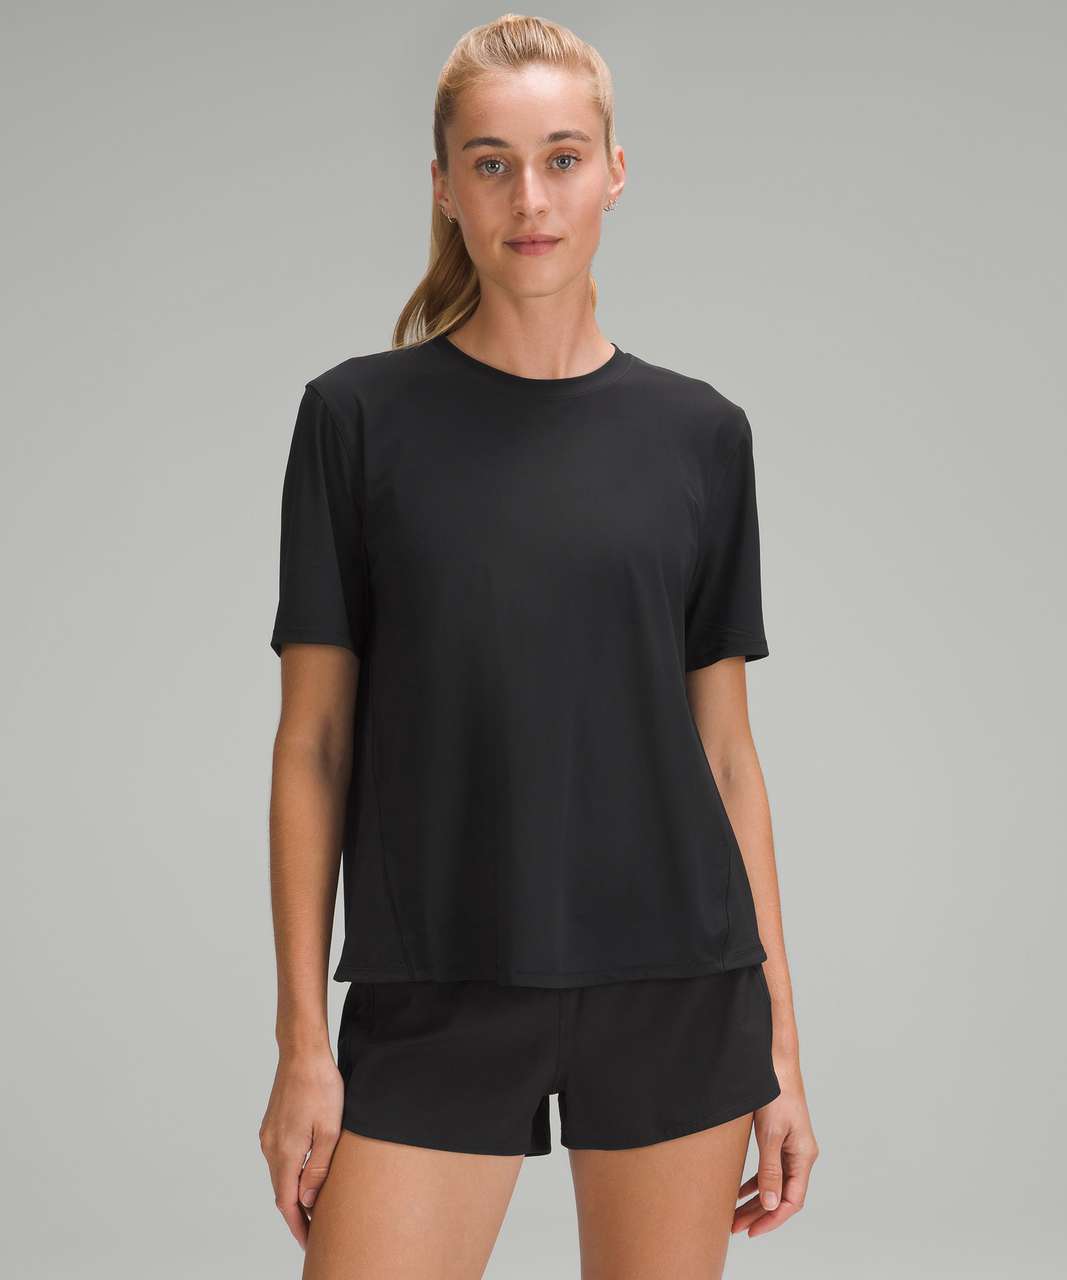 Lululemon Mesh Panelled UV Protection Running T-Shirt - Black